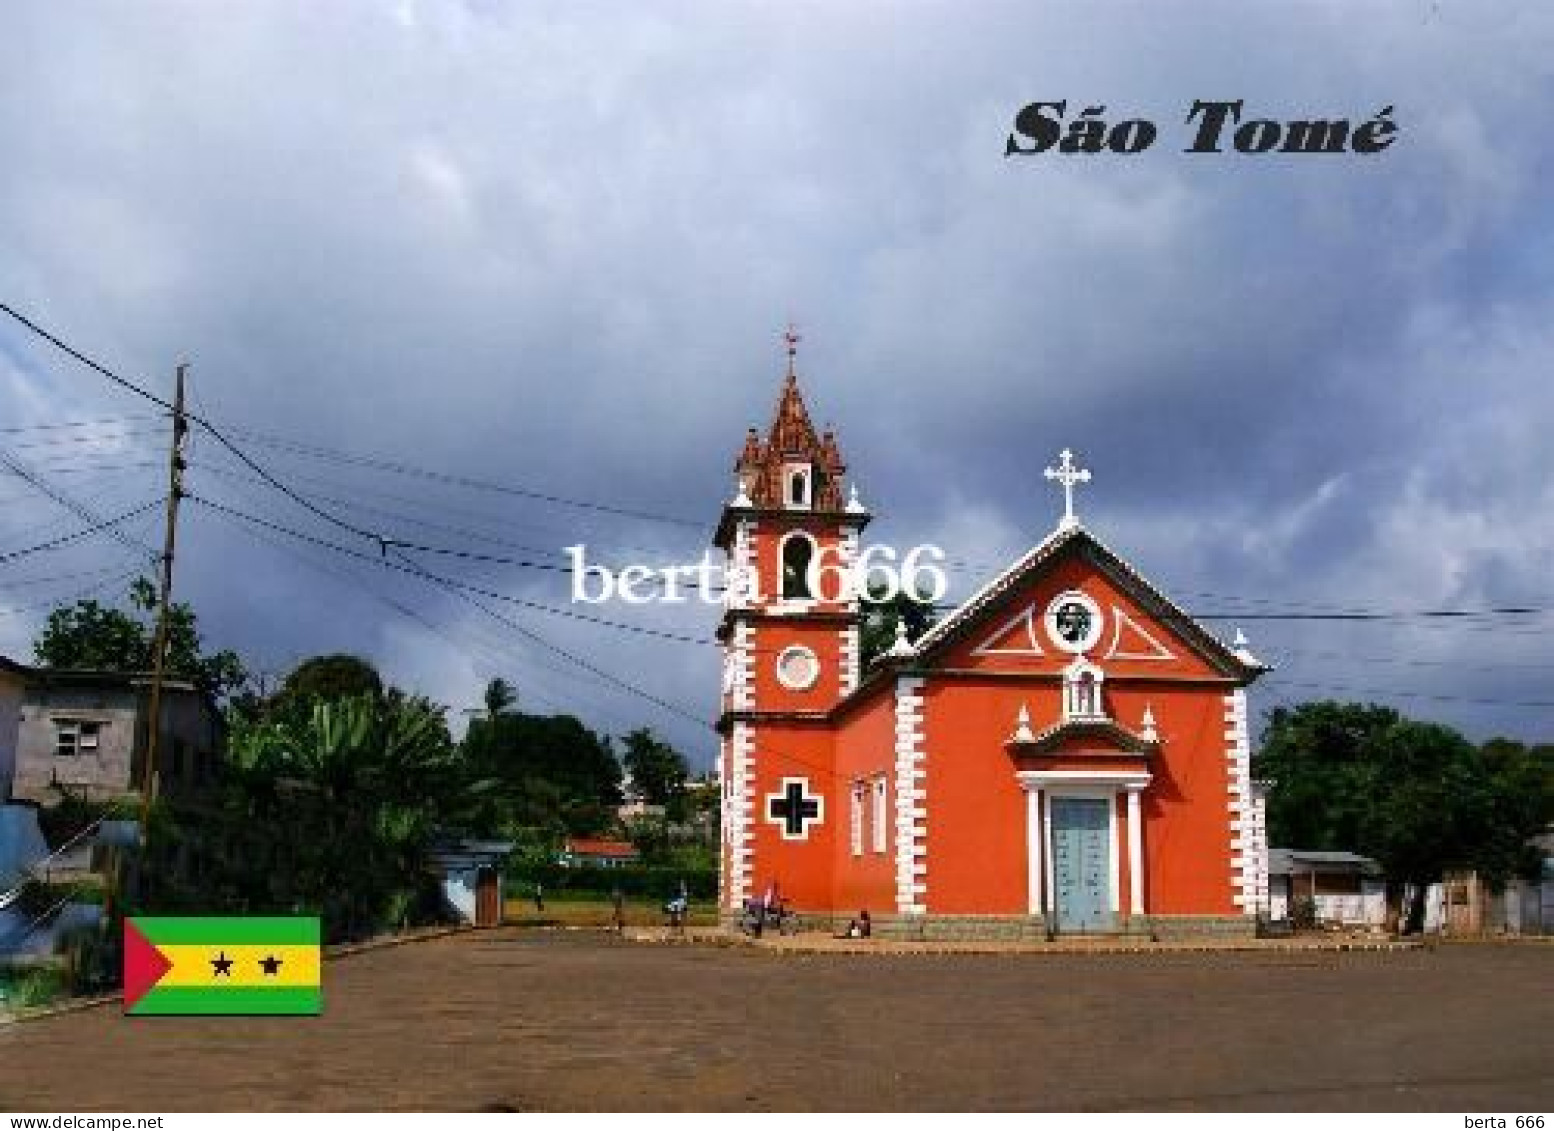 Sao Tome And Principe Pantufo St. Peter Church New Postcard - São Tomé Und Príncipe